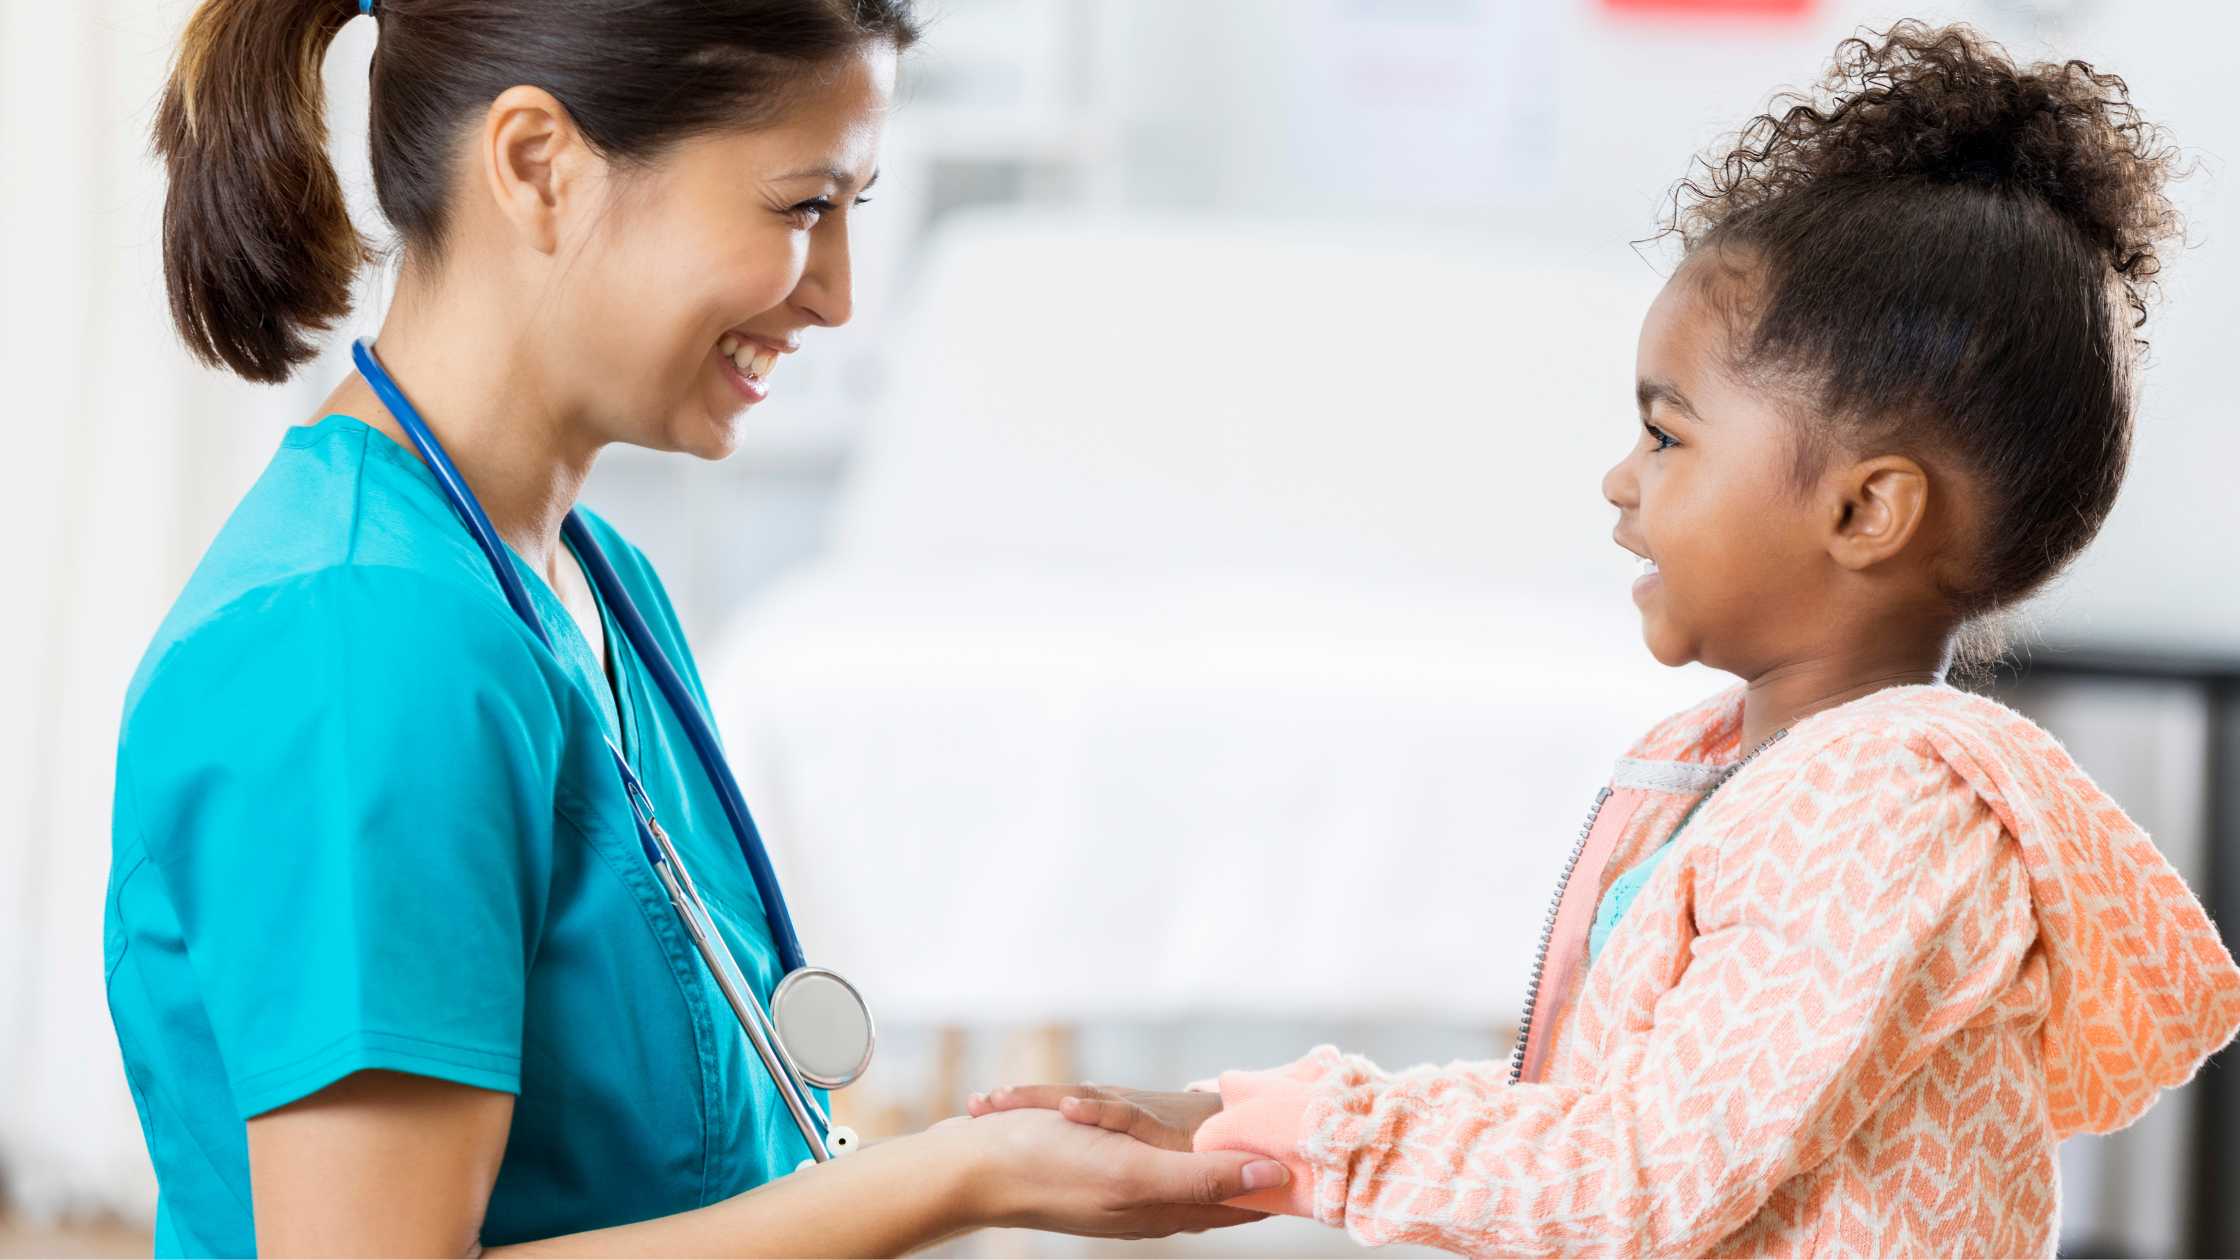 How to Become a Pediatric Nurse: Secret Reveals